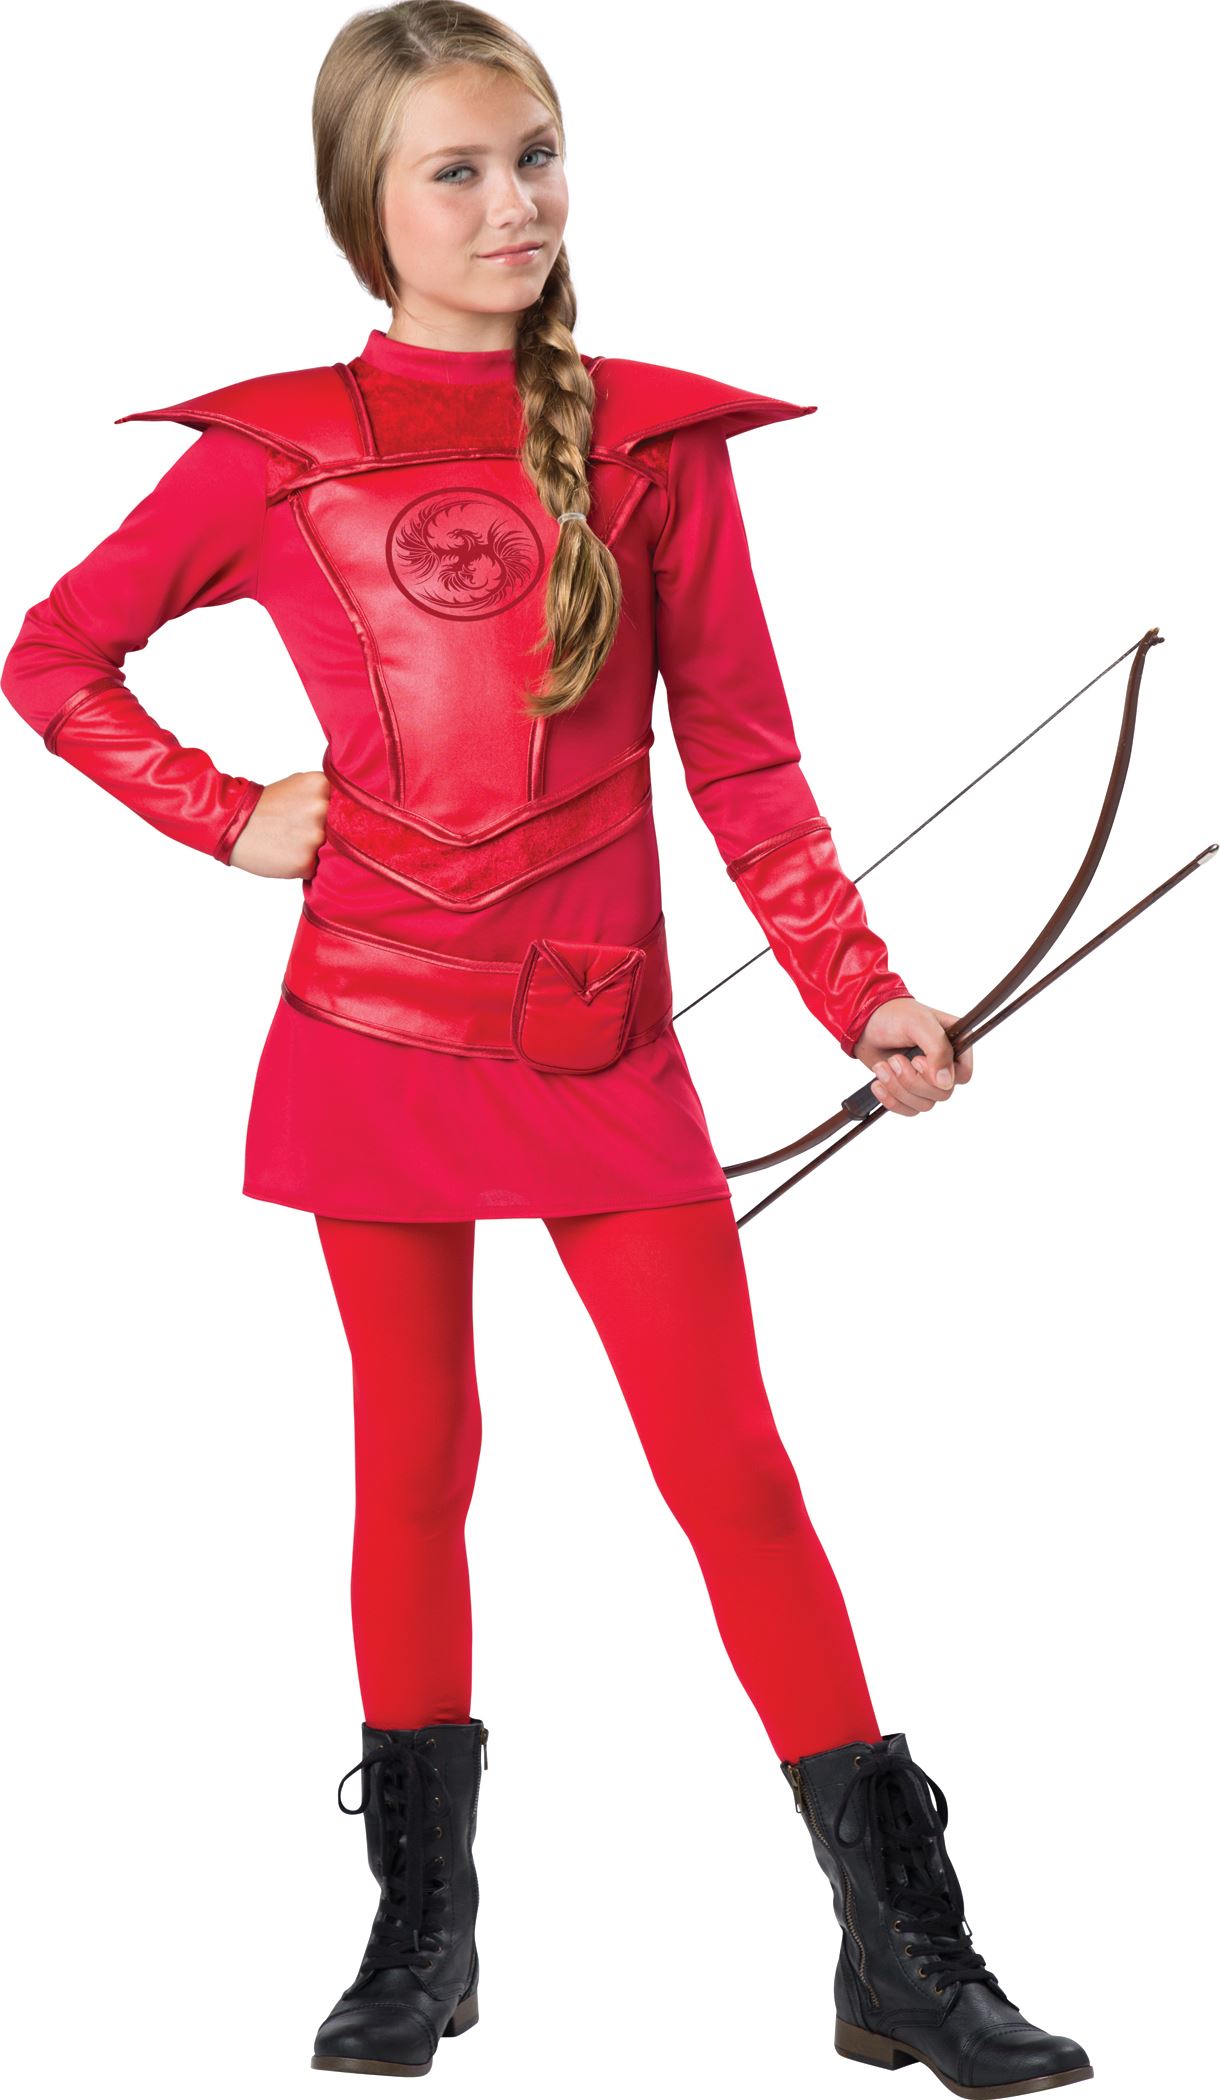 https://www.thecostumeland.com/images/zoom/ic18088-warrior-huntress-tween-girls-halloween-costumes.jpg